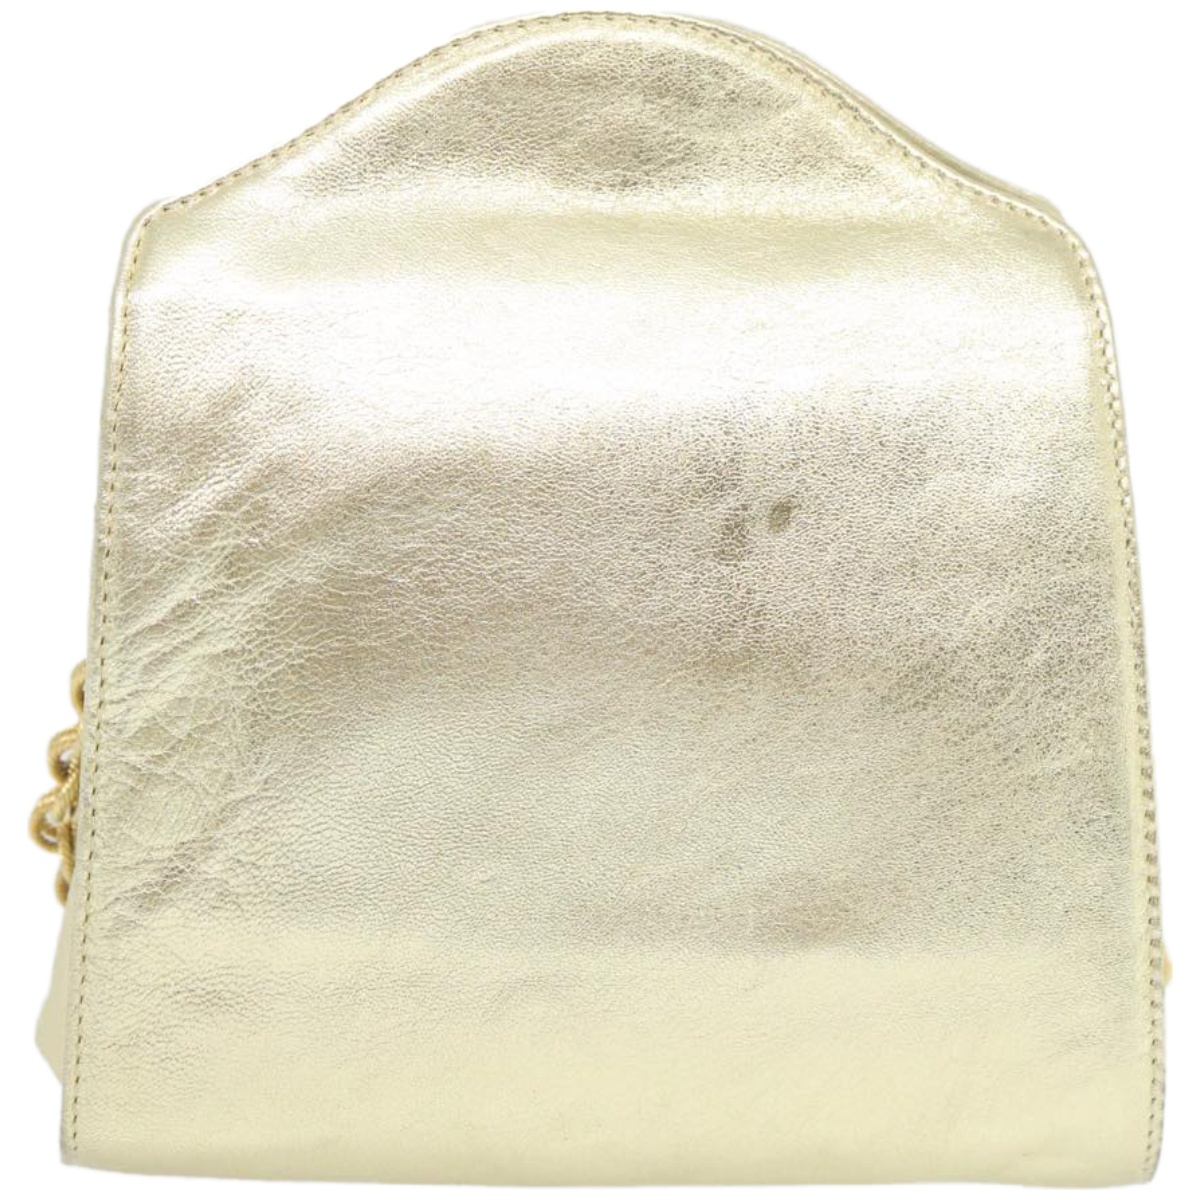 Leather Shoulder Bag with Dust Bag - Elegant and Timeless Design